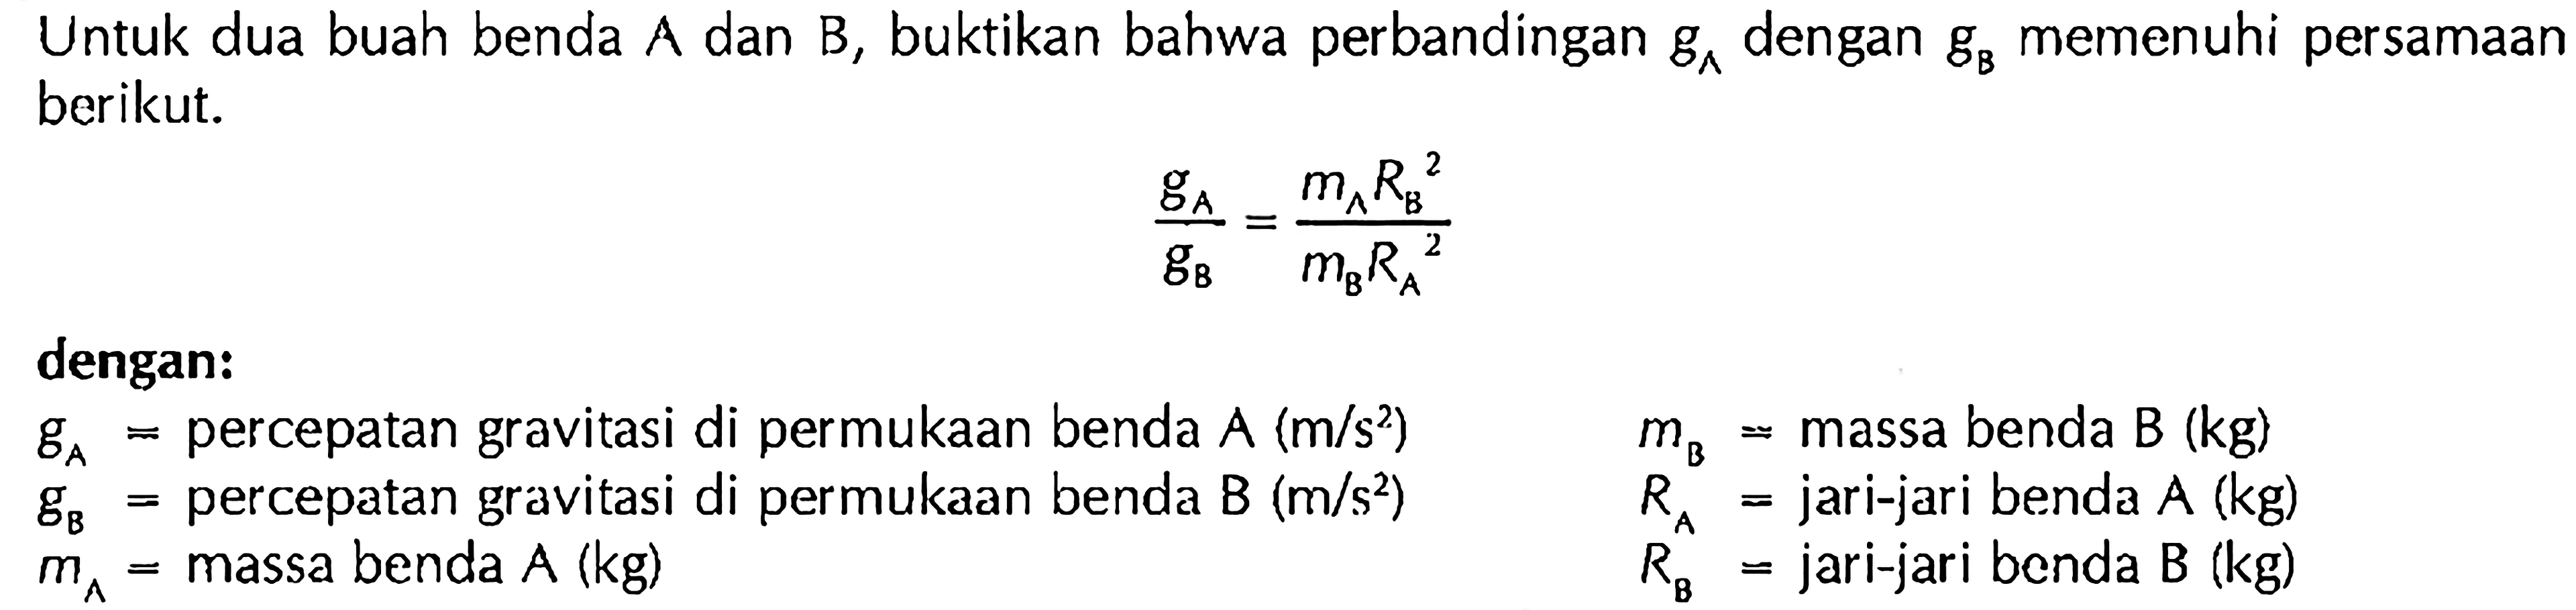 Untuk dua buah benda A dan B, buktikan bahwa perbandingan gA dengan gB memenuhi persamaan berikut. gA/gB=(mA RB^2)/(mB RA^2) dengan: gA= percepatan gravitasi di permukaan benda A(m/s^2) gB=percepatan gravitasi di permukaan benda  B(m/s^2) mA= massa benda A(kg) mB= massa benda B(kg) RA= jari-jari benda A(kg) RB= jari-jari benda B(kg) 